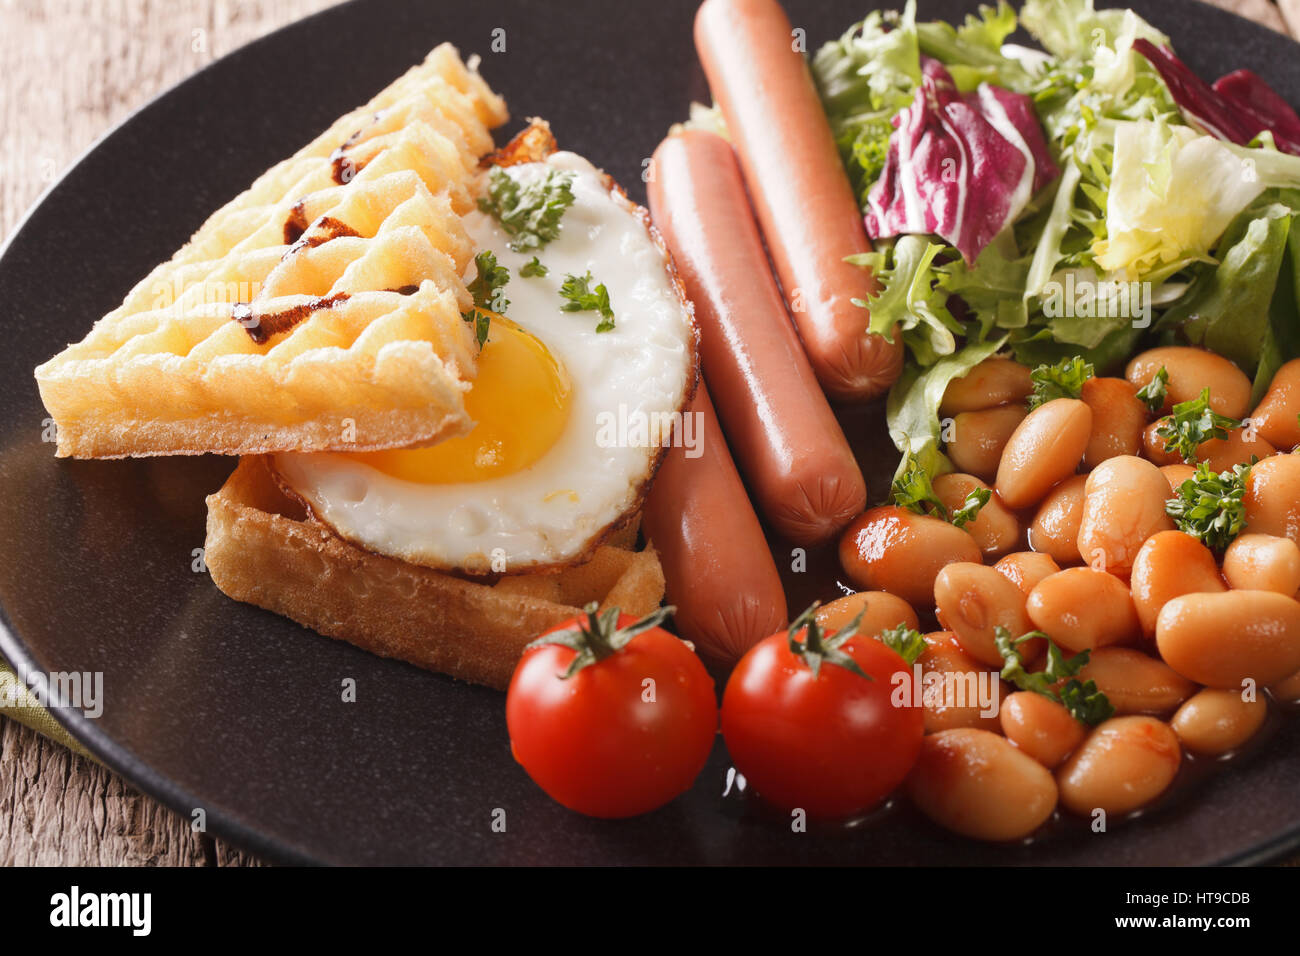 La deliziosa prima colazione: uovo fritto, cialde, salsicce, fagioli e insalata di close-up su una piastra orizzontale. Foto Stock